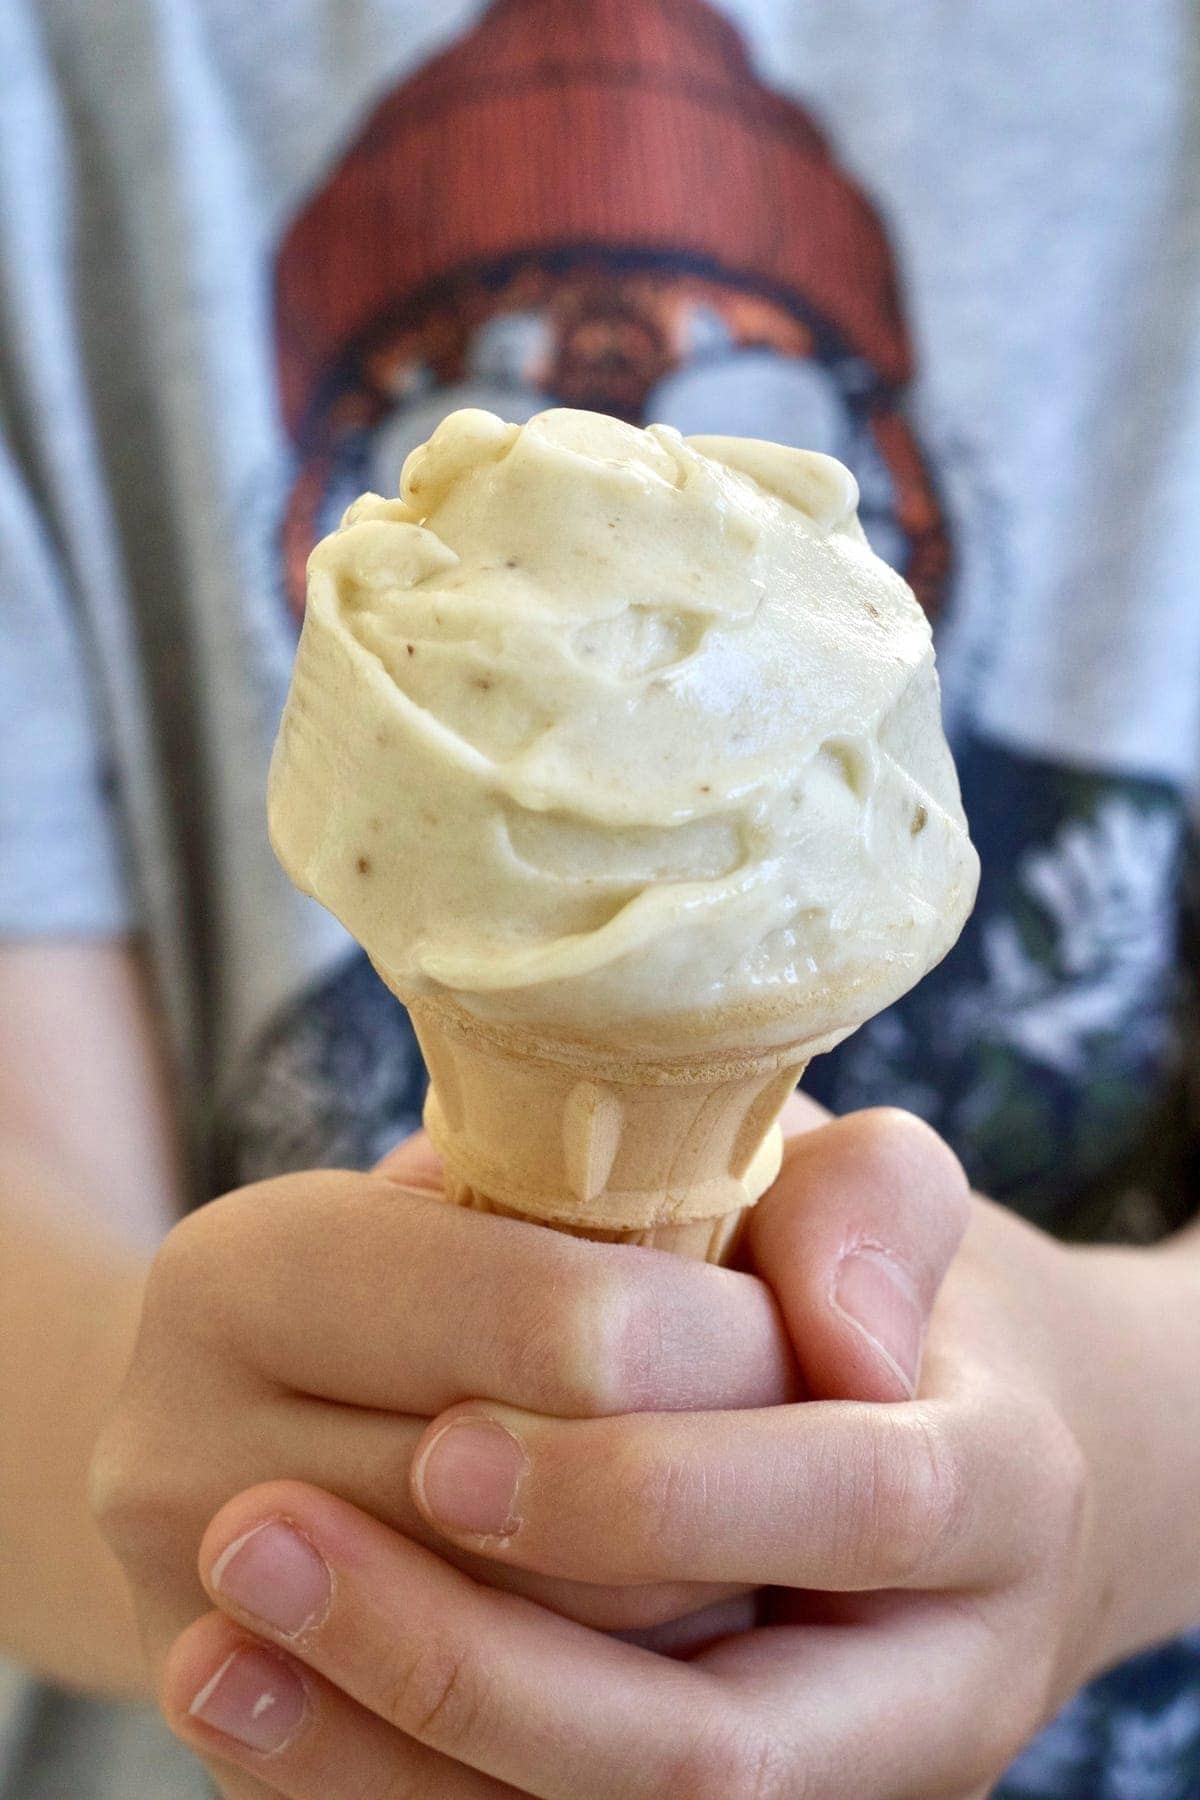 Hand holding ice cream cone.